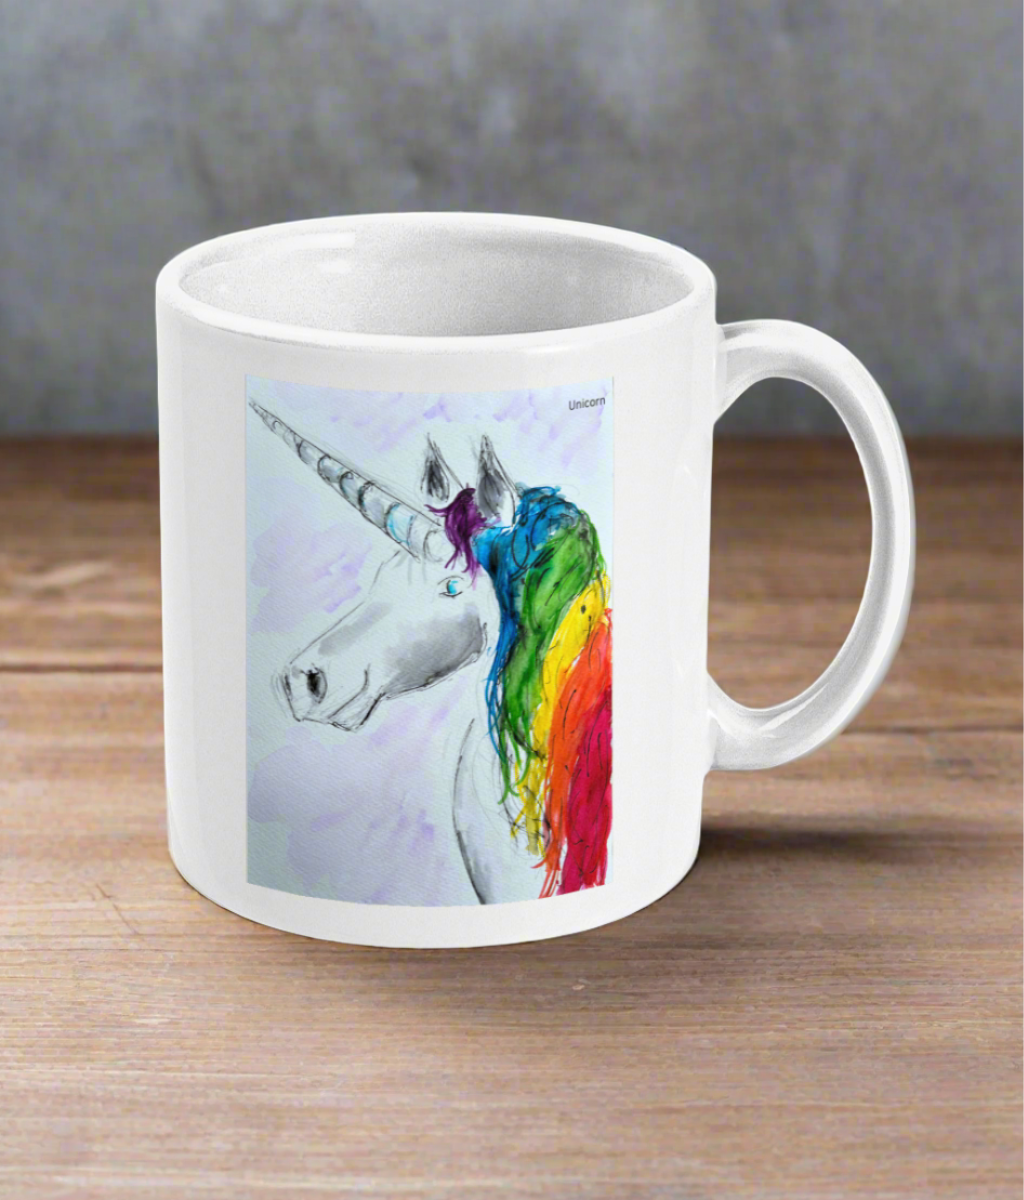 Mug with Unicorn